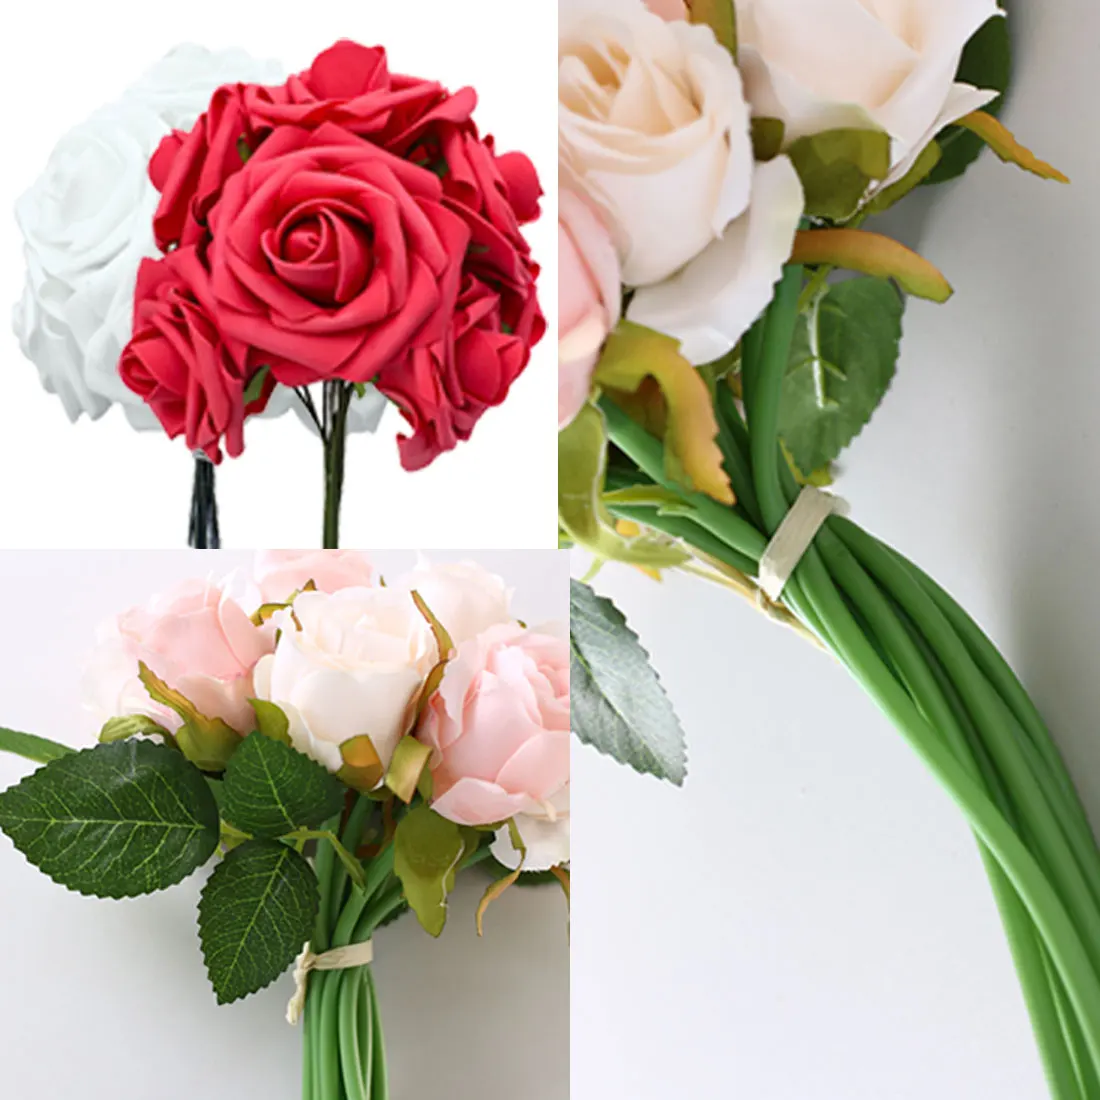 10 голов 7 см искусственные розы Свадебные невесты букет полиэтиленовый пенопласт DIY домашний декор розы Свадебные украшения 11 цветов